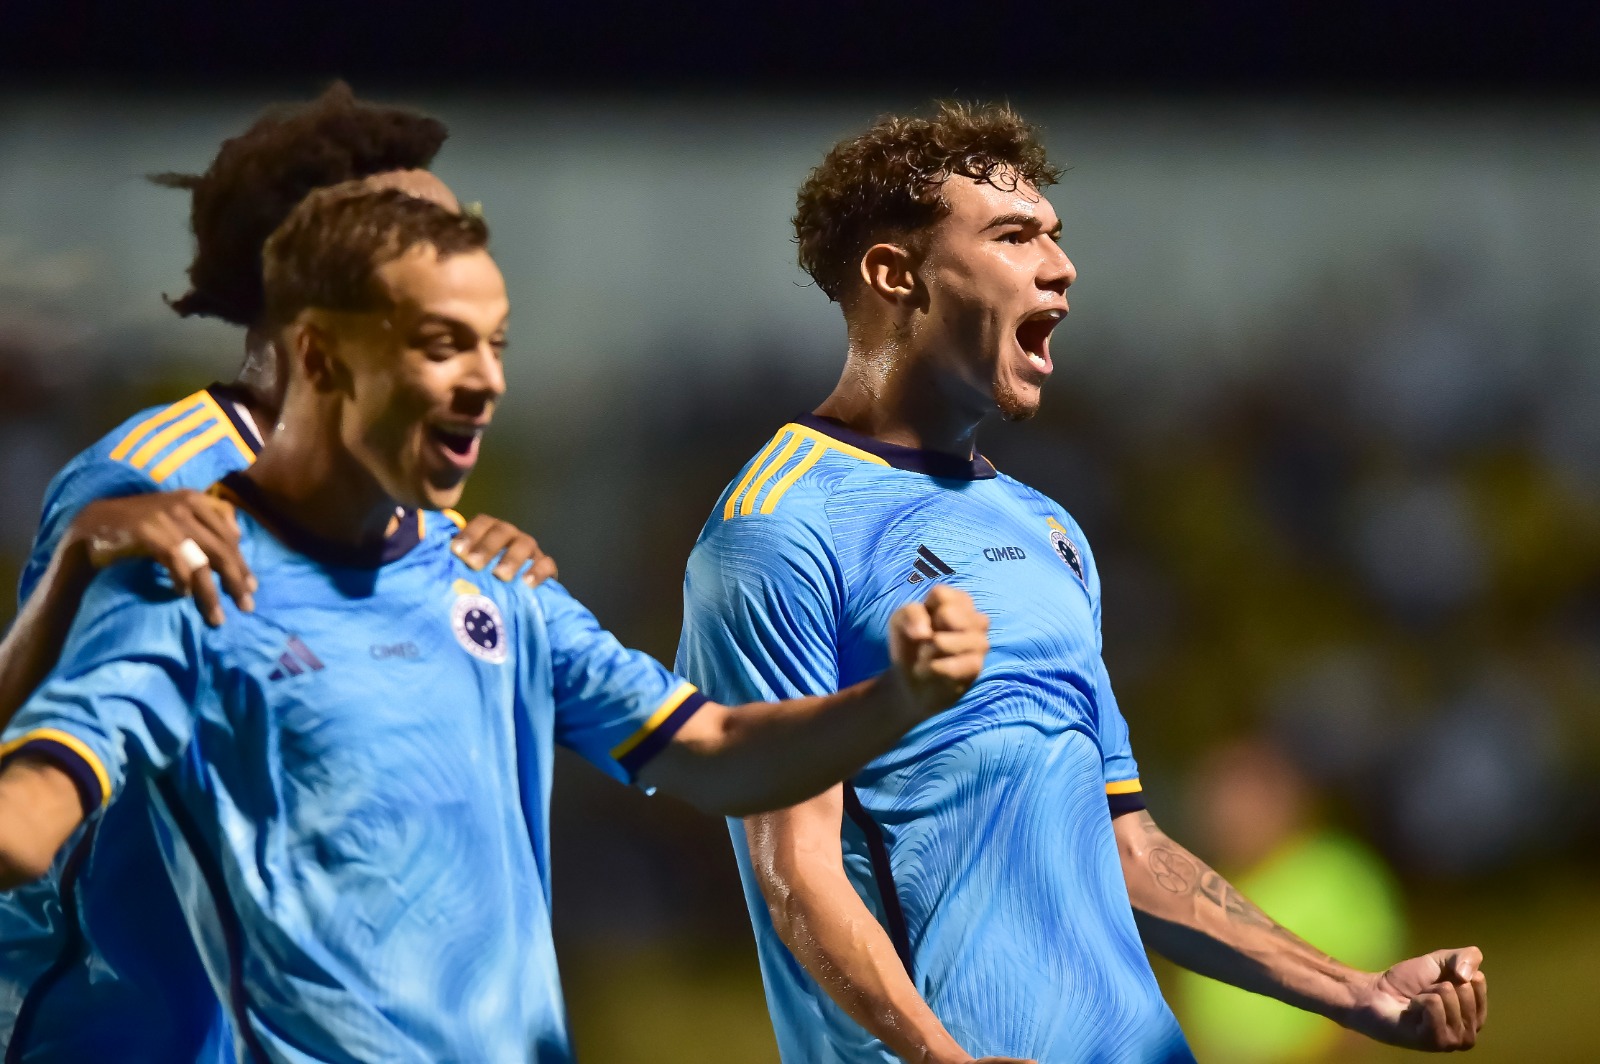 Em jogo de muita emoção, Cruzeiro bate a Portuguesa e avança para as oitavas da Copinha